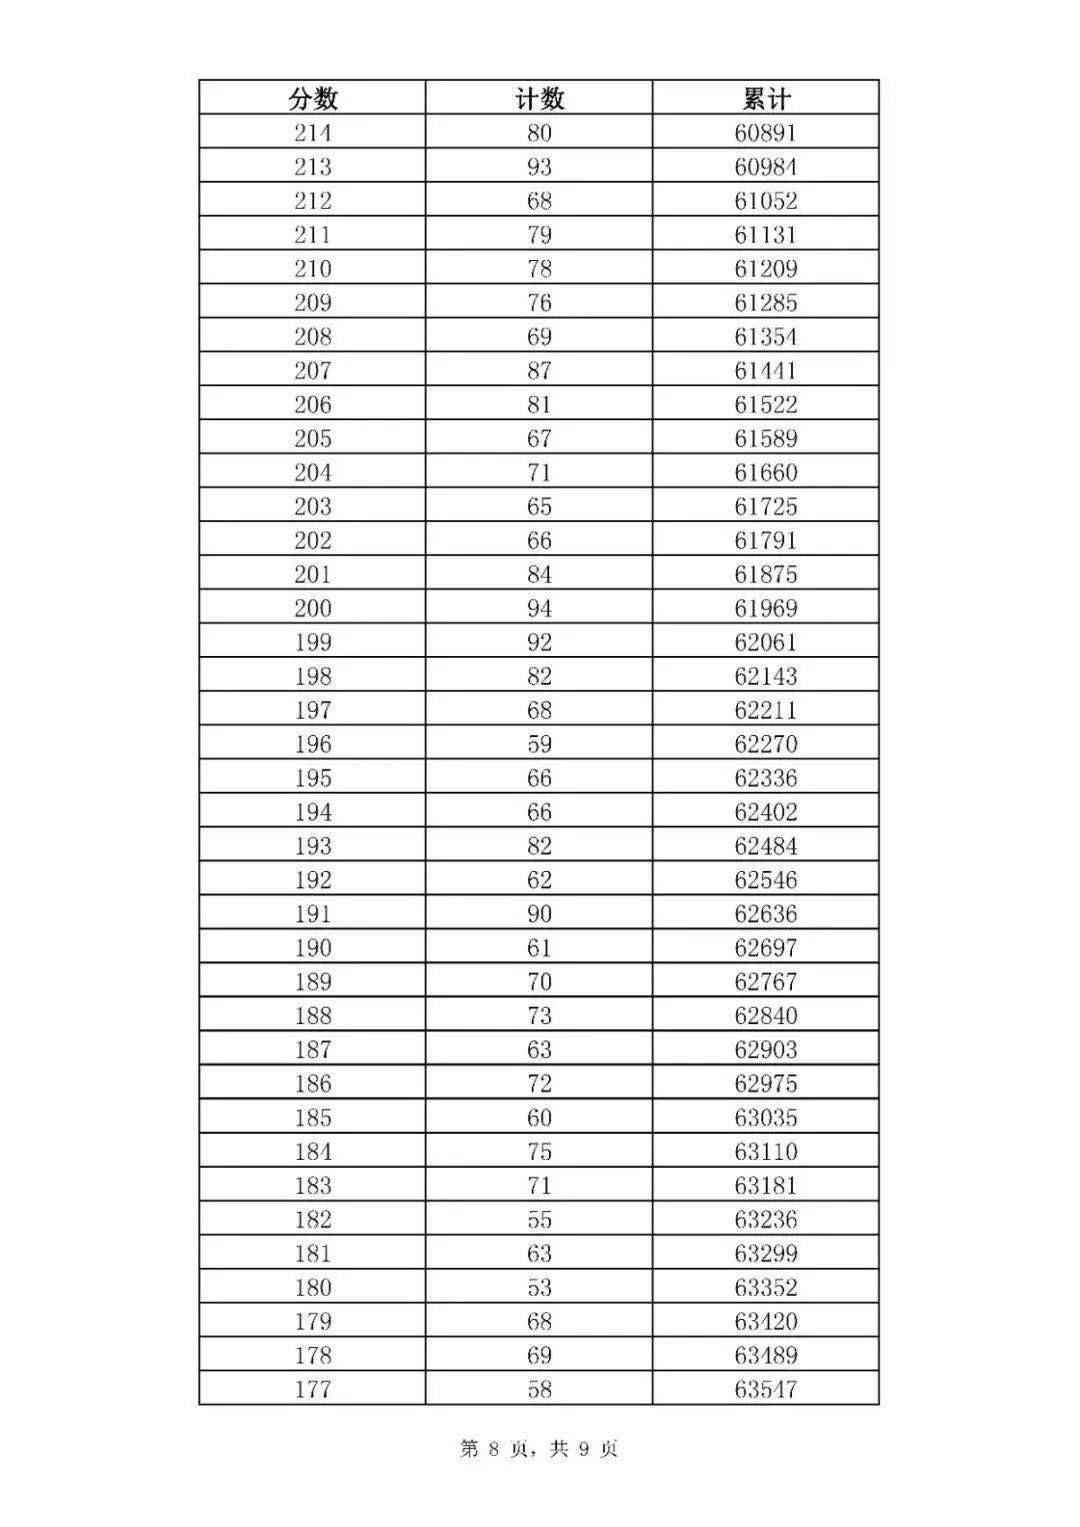 济南中考一分一段表来了，普通高中最低录取资格线369分